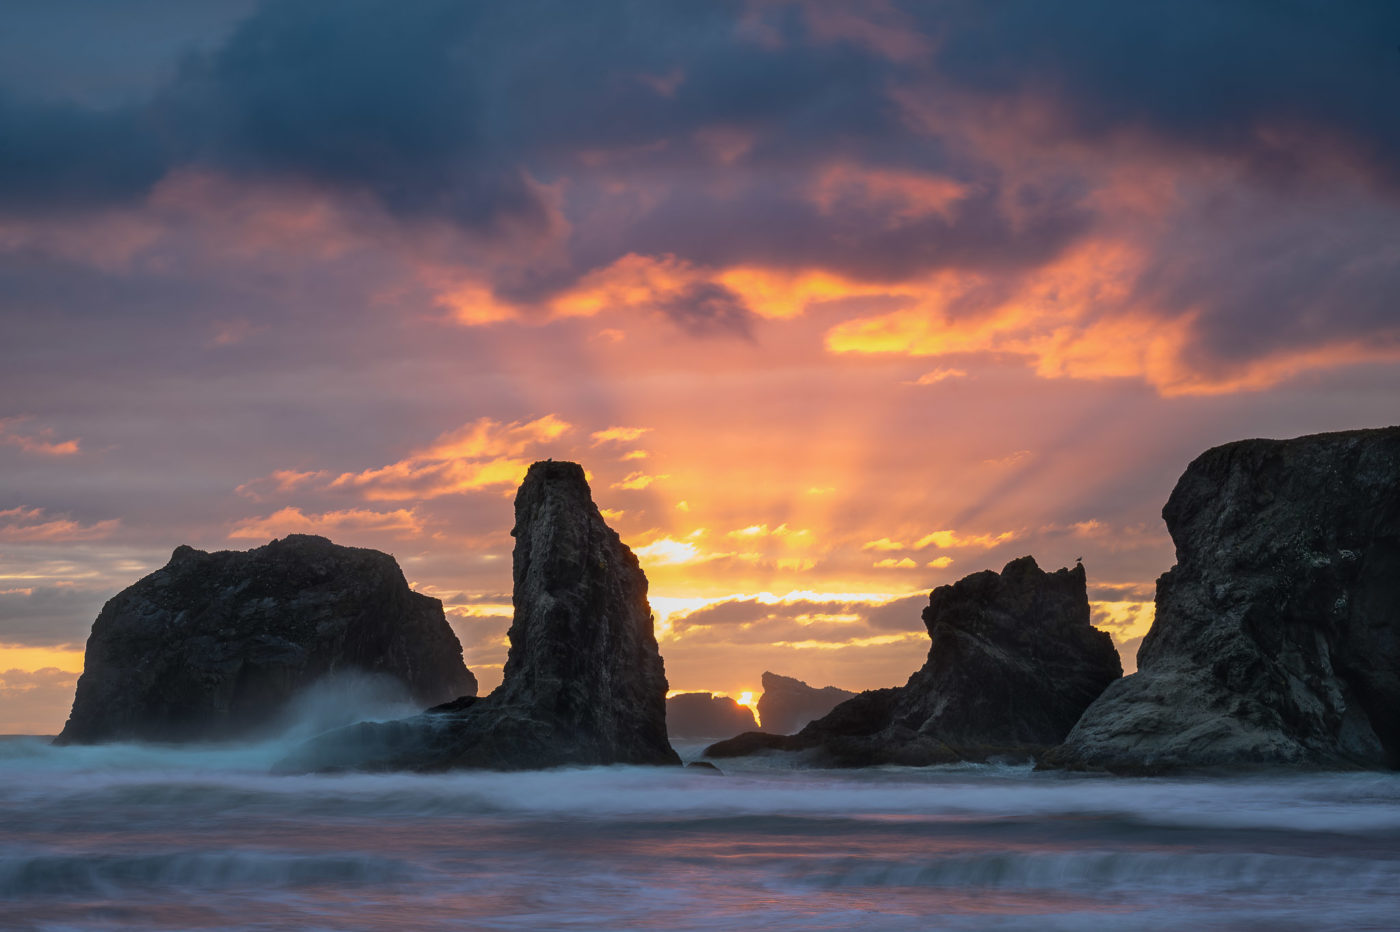 Sunset and sea stacks at Bandon Beach, Oregon.